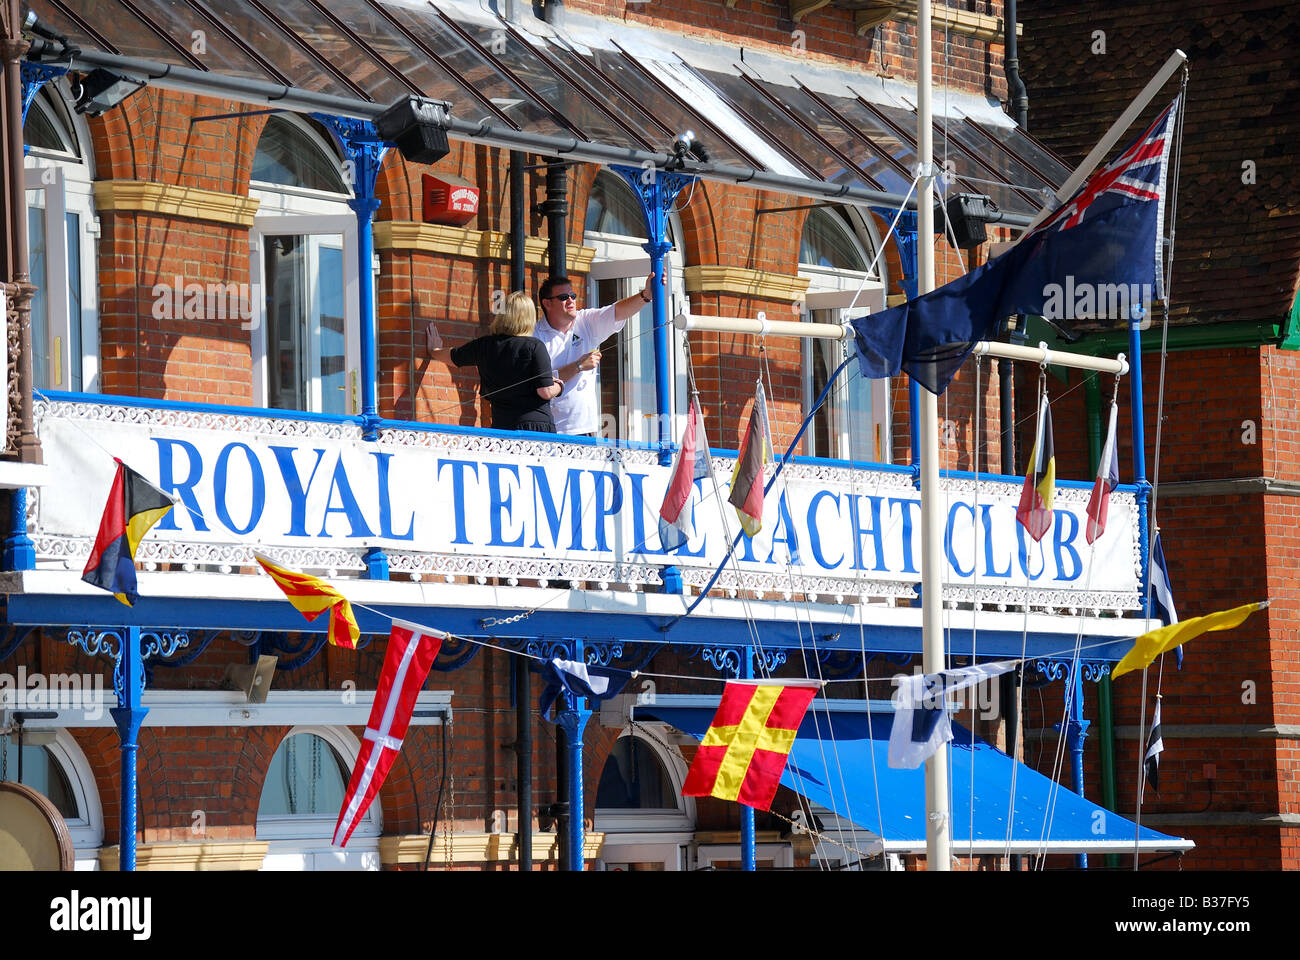 Temple Royal Yacht Club, Westcliff Mansions, Ramsgate, Île de Thanet, dans le Kent, Angleterre, Royaume-Uni Banque D'Images